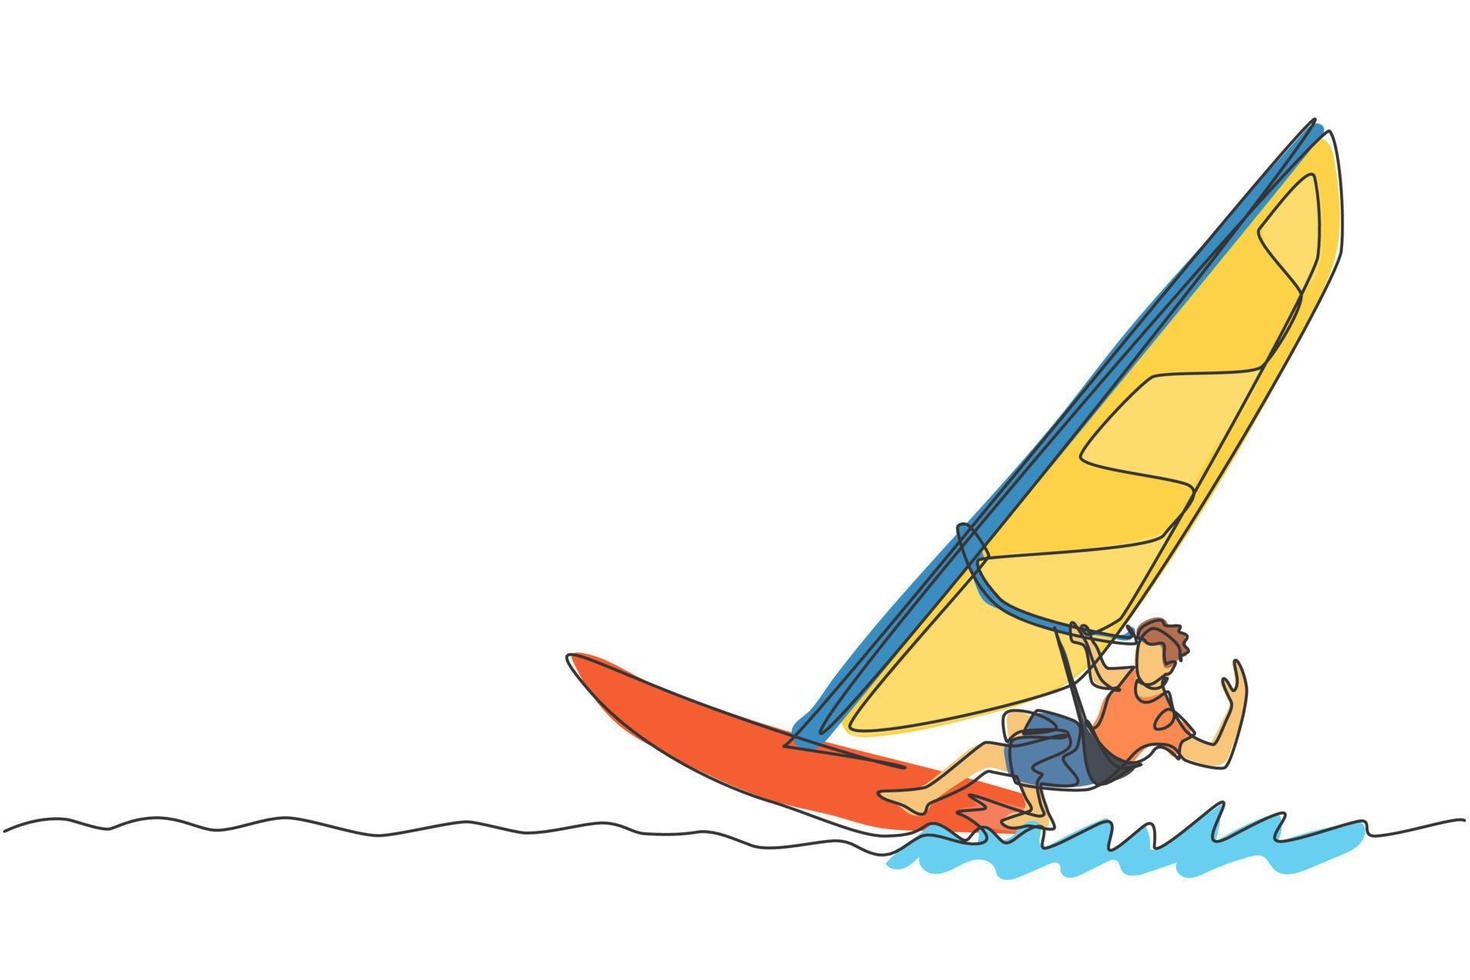 dibujo de una sola línea continua de un joven surfista deportivo jugando al windsurf en el mar. concepto de deporte marino extremadamente peligroso. vacaciones de verano. ilustración de vector de diseño de dibujo de una línea de moda